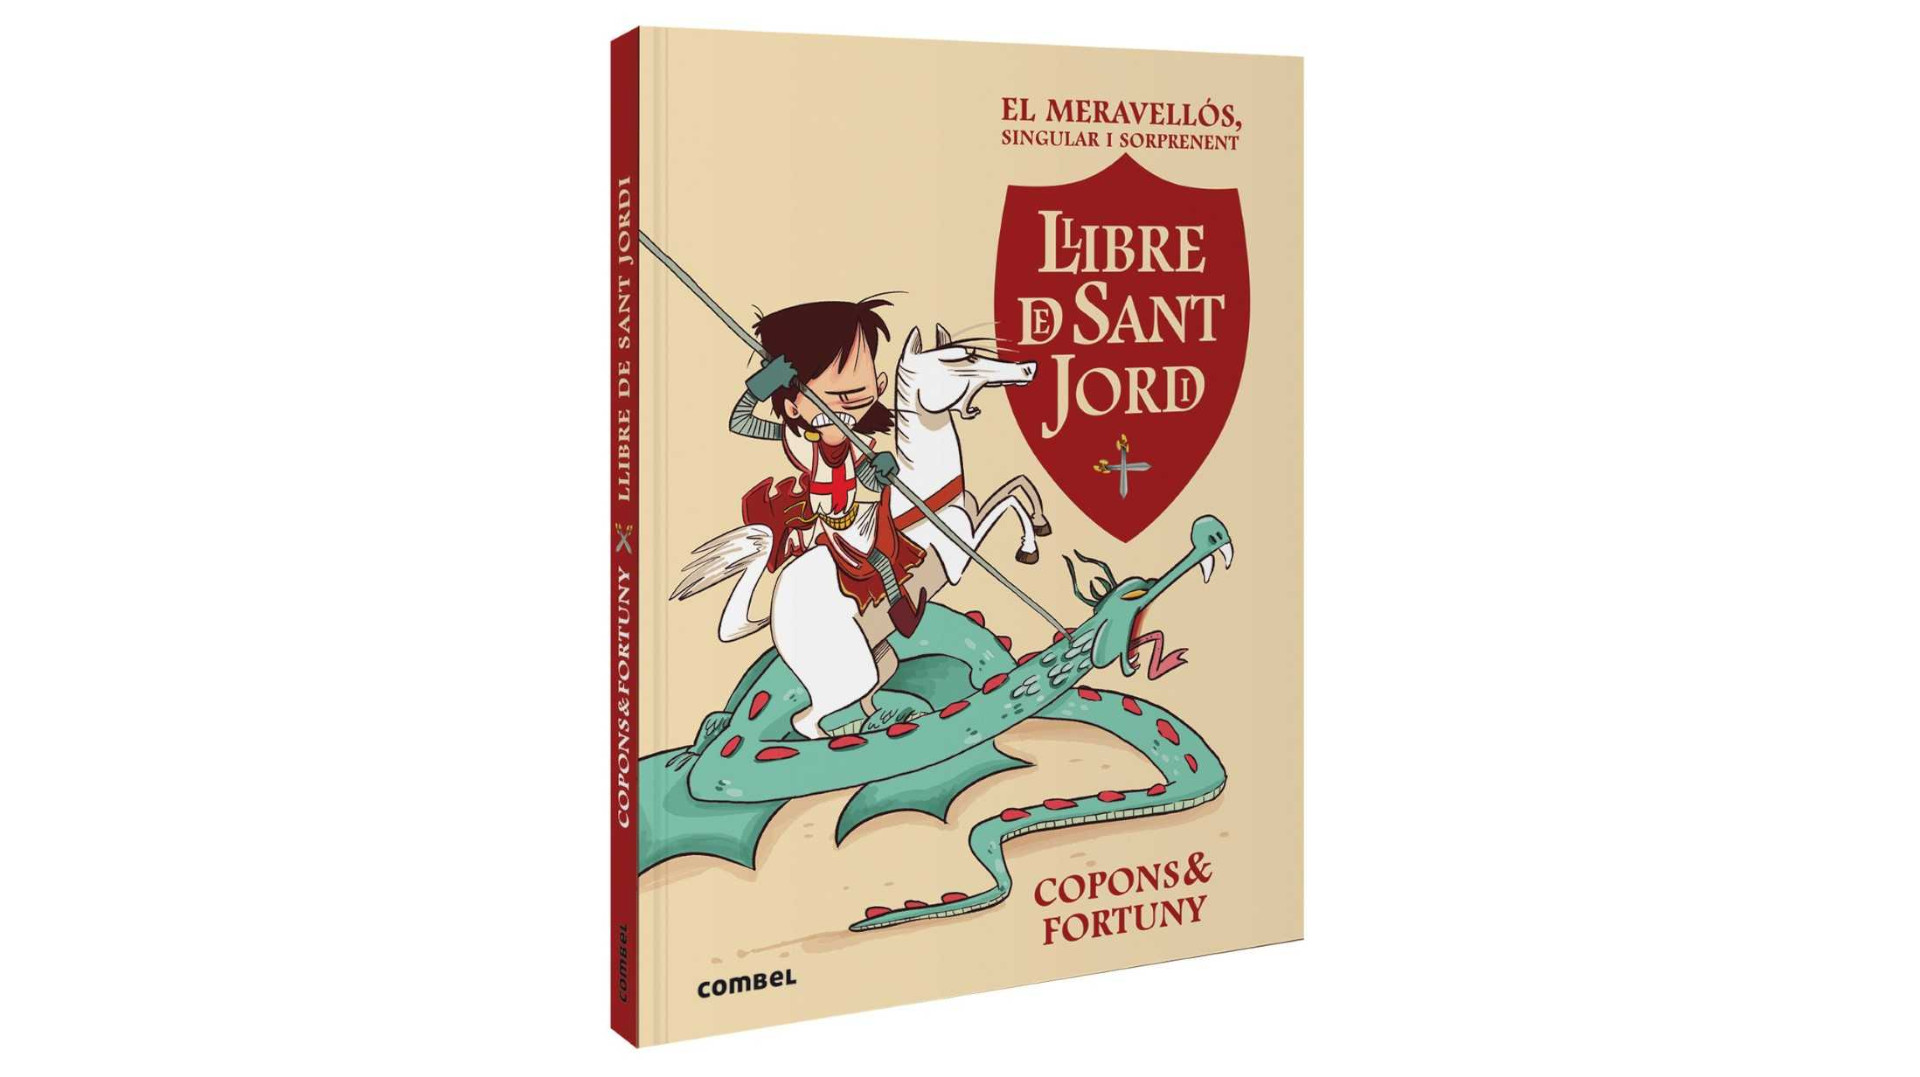 Presentació d'”El meravellós, singular i sorprenent llibre de Sant Jordi”